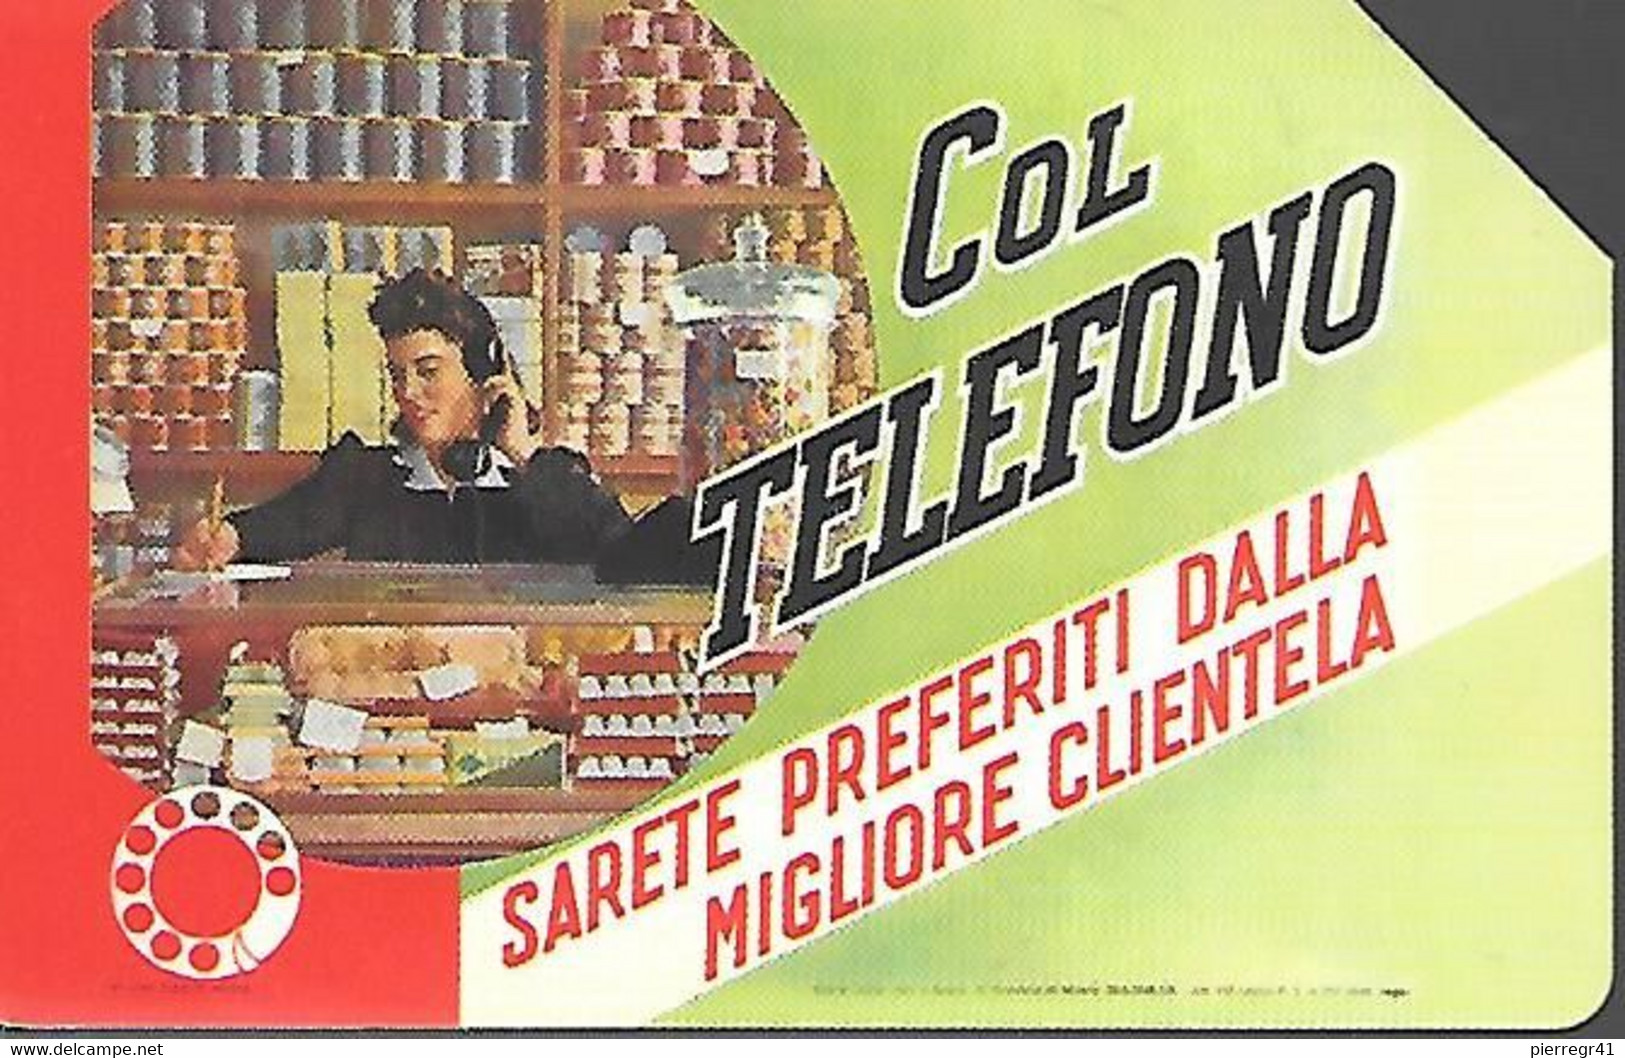 CARTE -ITALIE-Serie Pubblishe -Catalogue Golden-5€-COL TELEFONO-31/12/2005-Utilisé-TBE- - Pubbliche Precursori